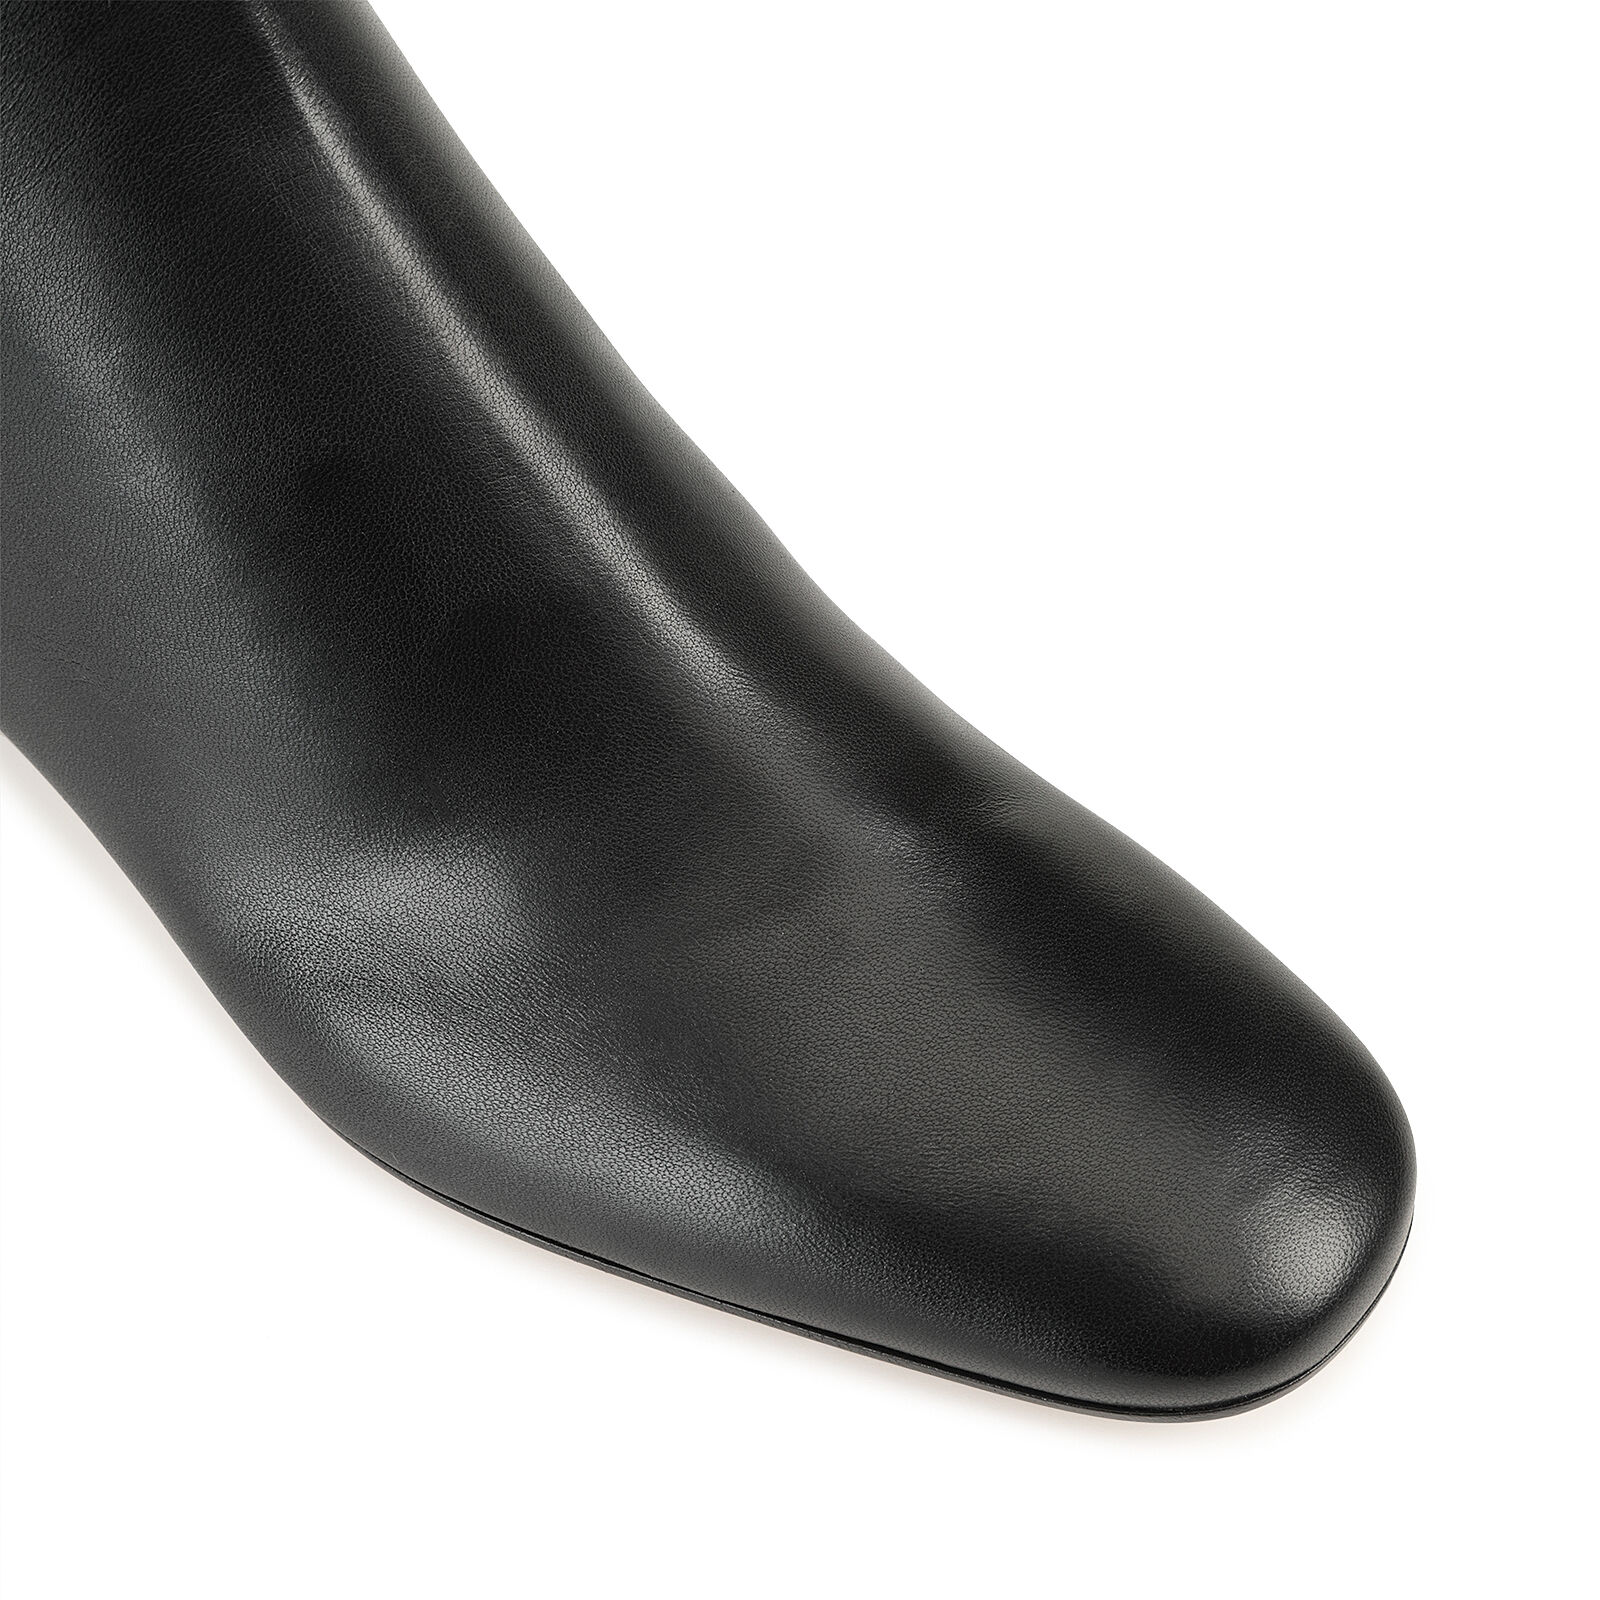 Booties Black Heel height: 40mm, Andrea - Booties Black | Sergio Rossi